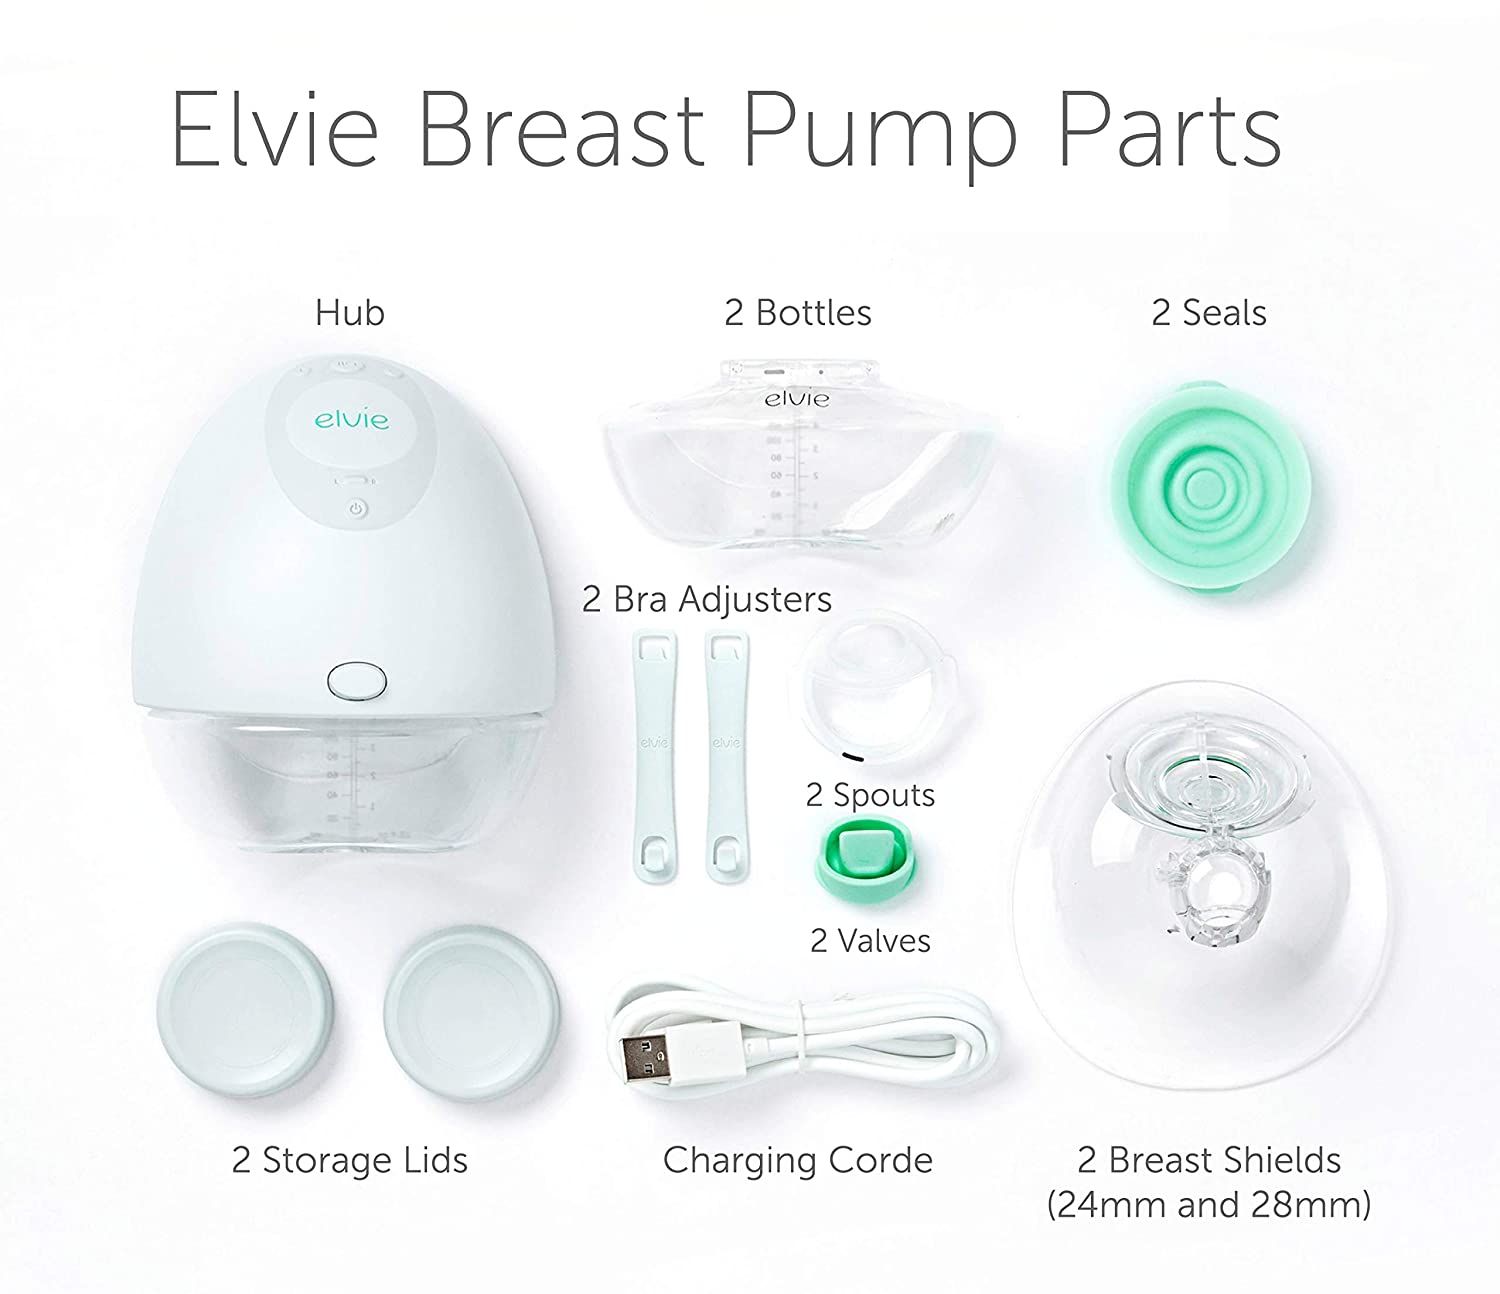 Elvie Stride Breast Shield, 28 mm - 2 ct